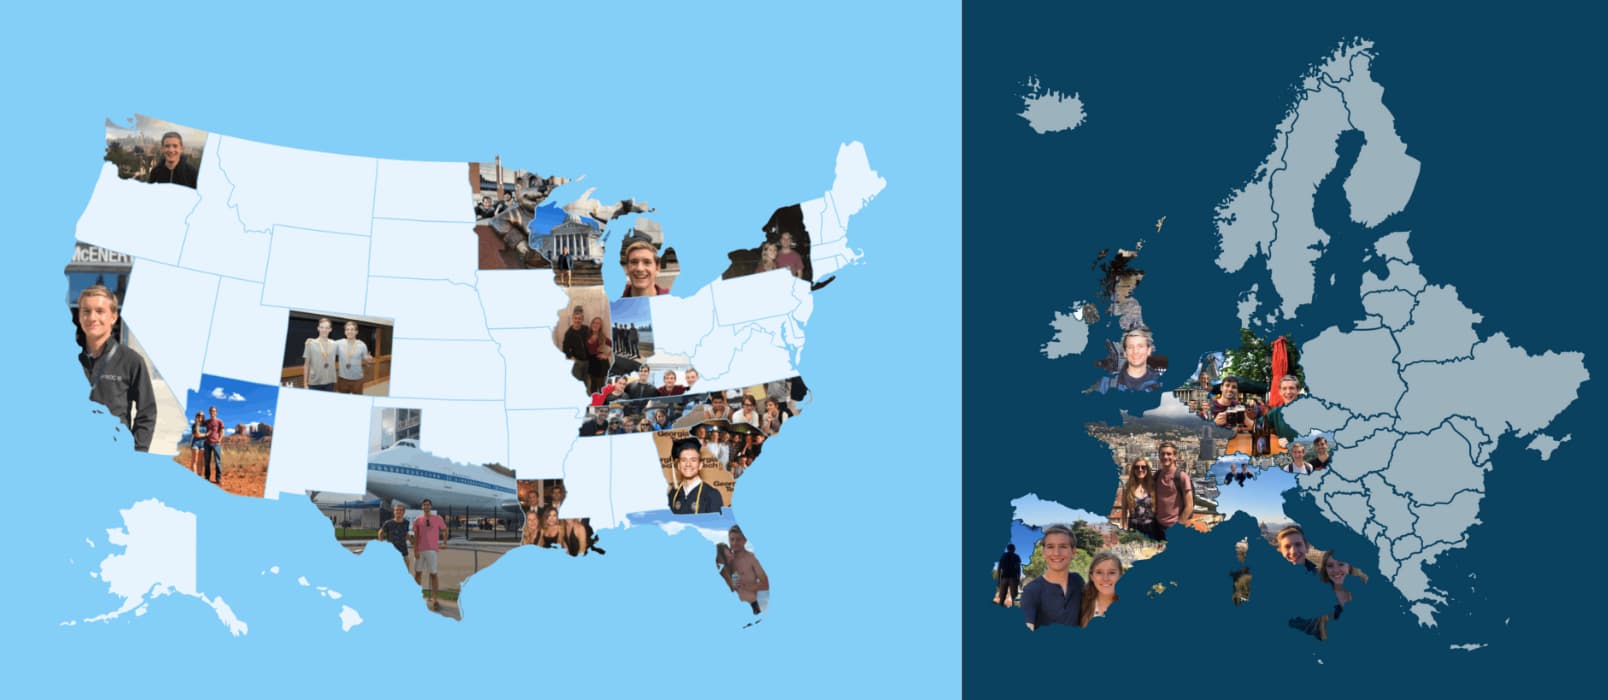 Photo Map - 用照片填充地图轮廓，漂亮的创意旅行地图[iPhone/iPad] 1